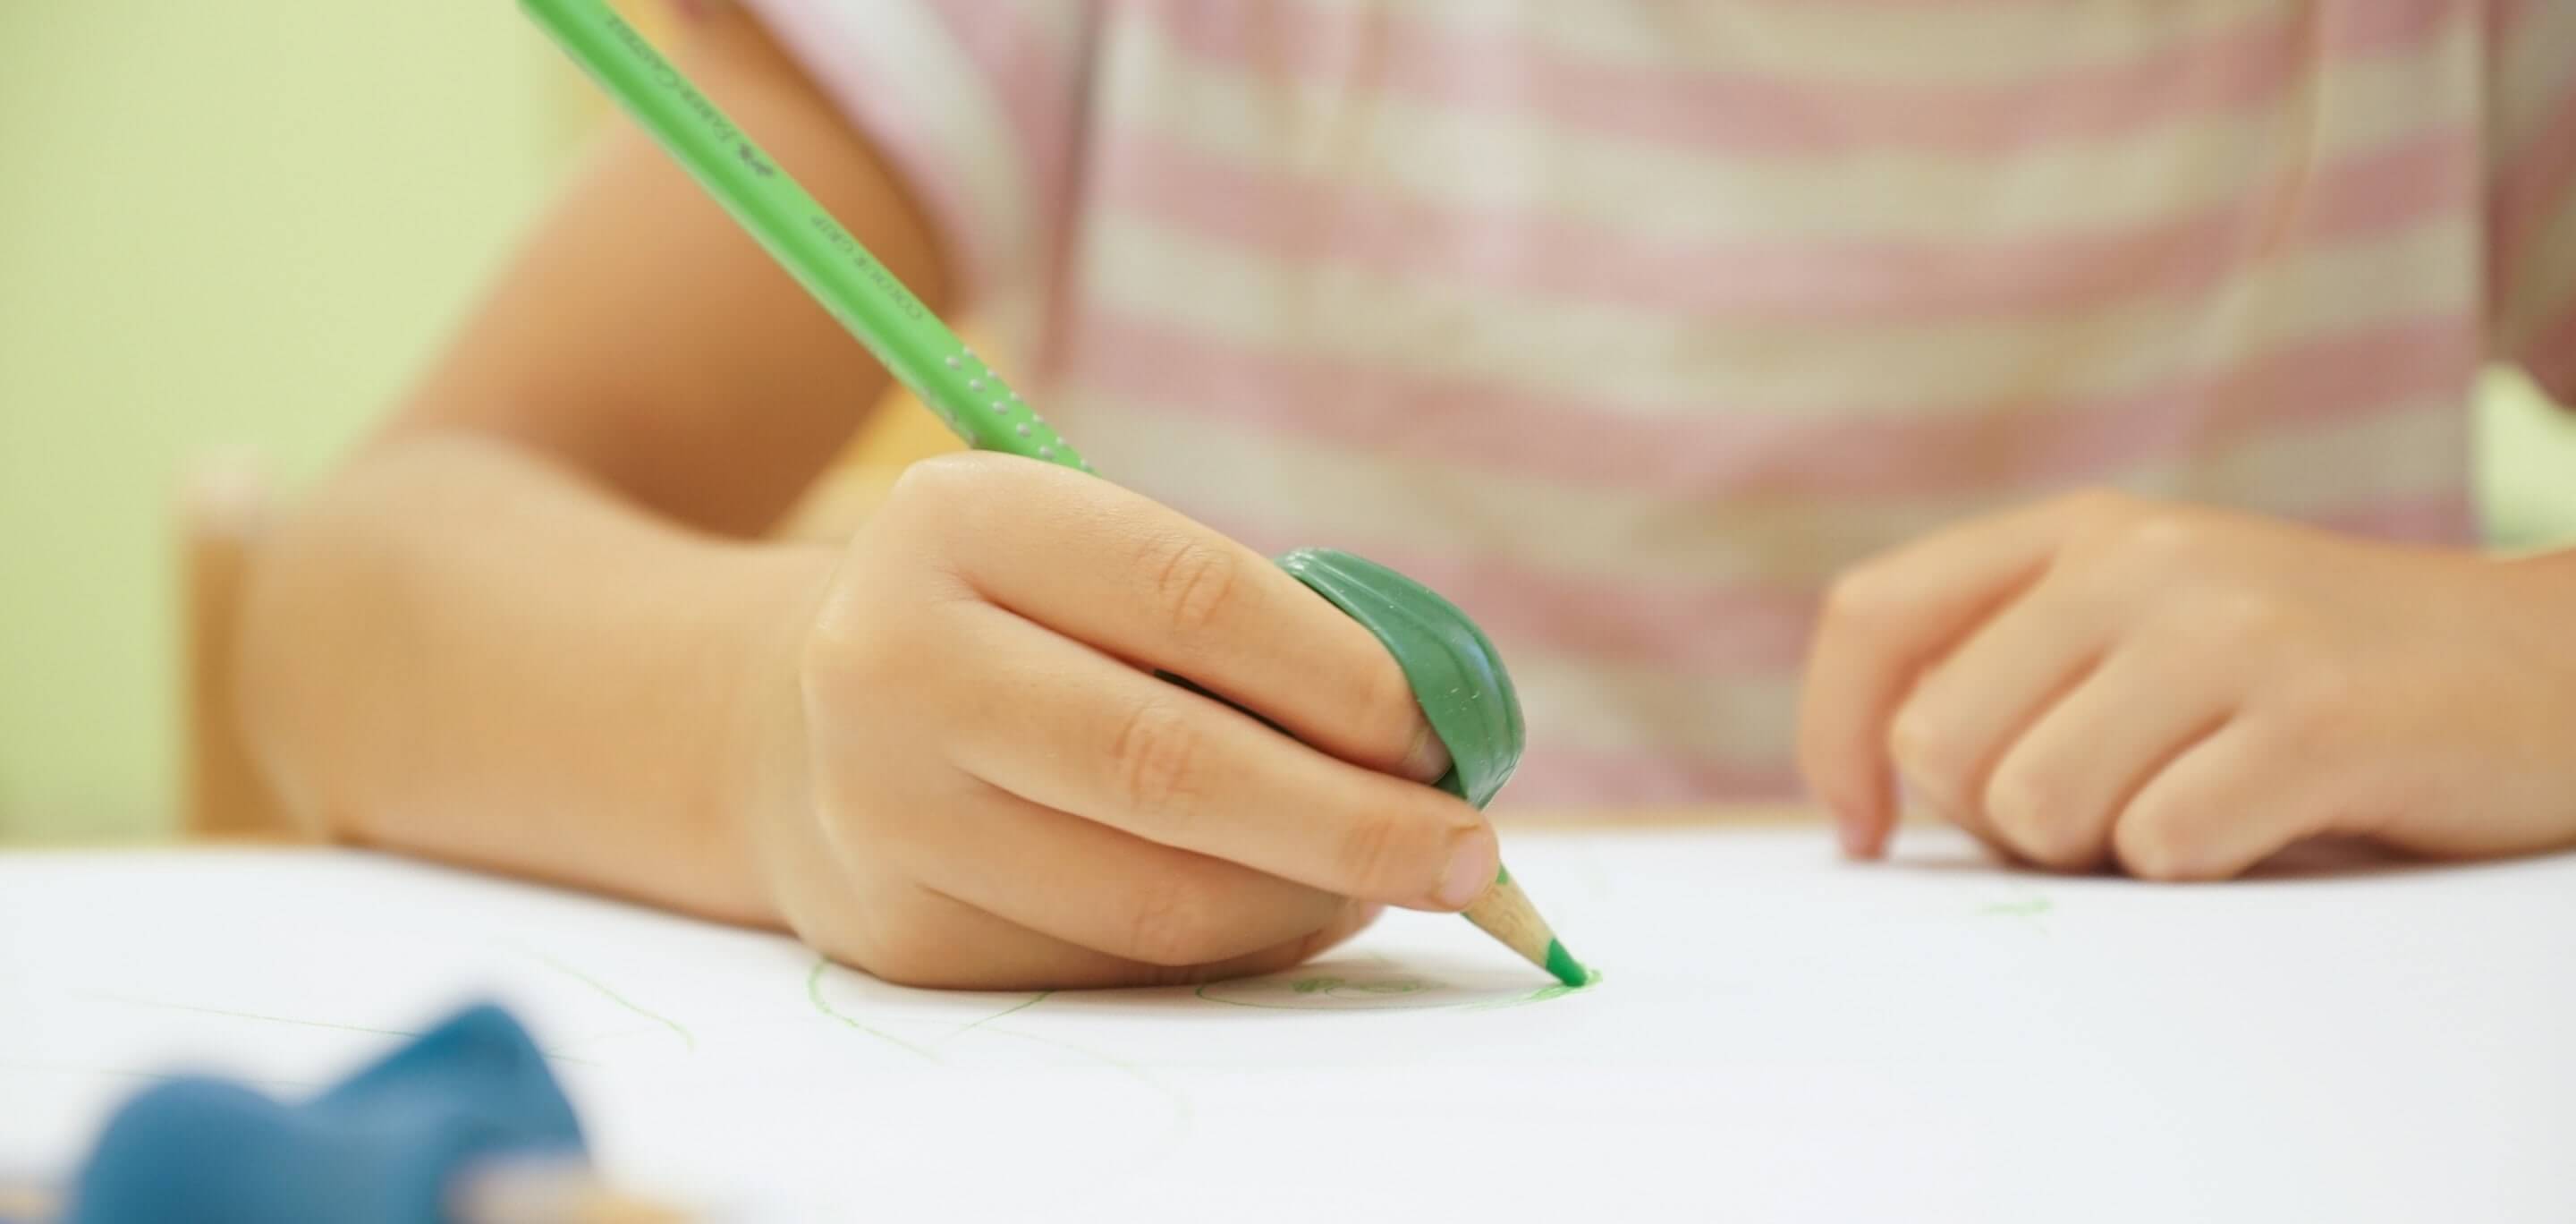 Ein Kind schreibt mit einem grünen Bleistift auf einem Blatt Papier